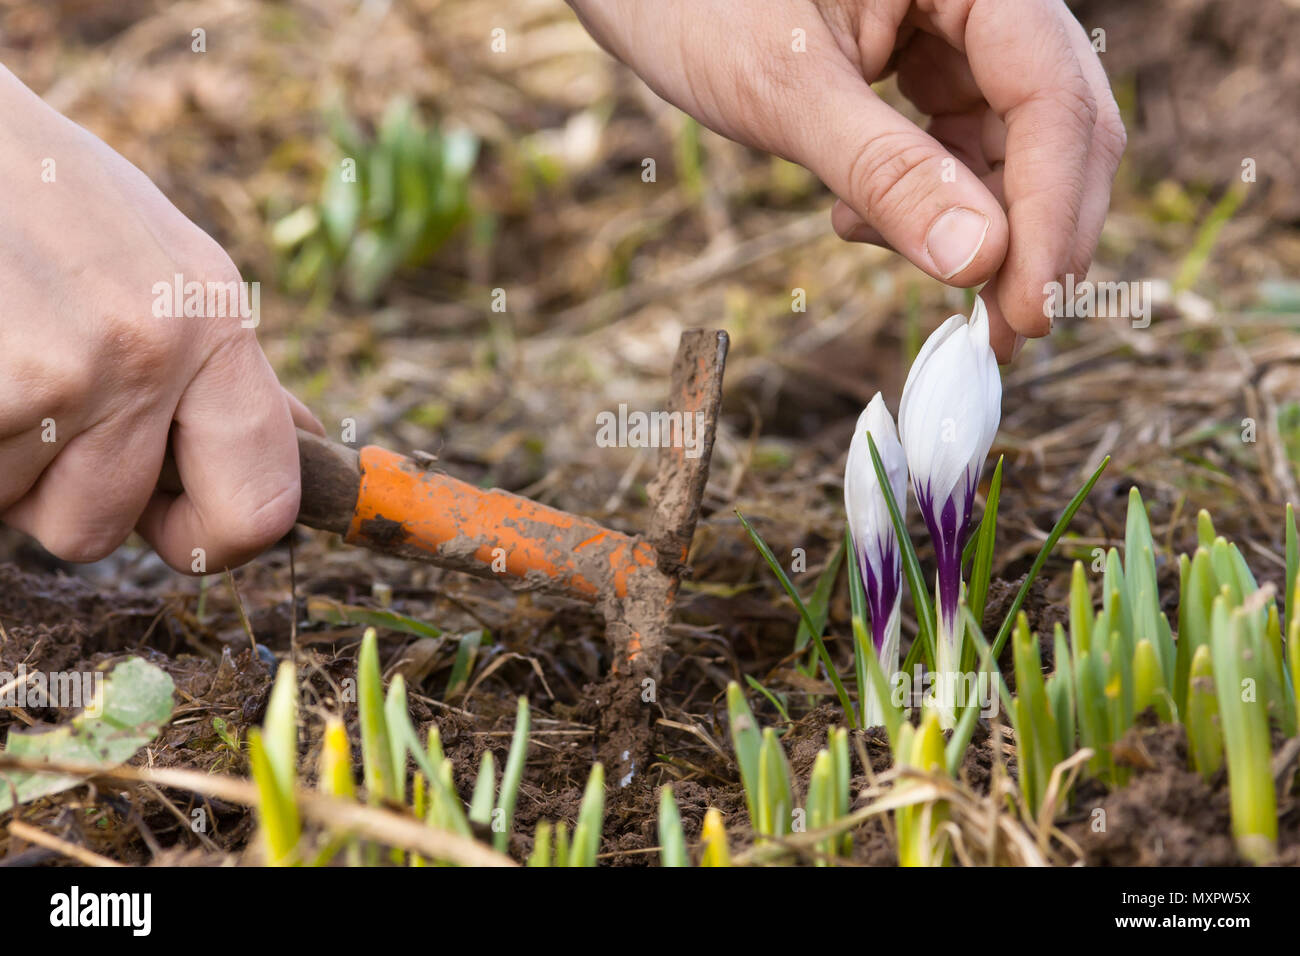 Hände säubern Blumenbeet mit Krokusse im Garten Stockfoto